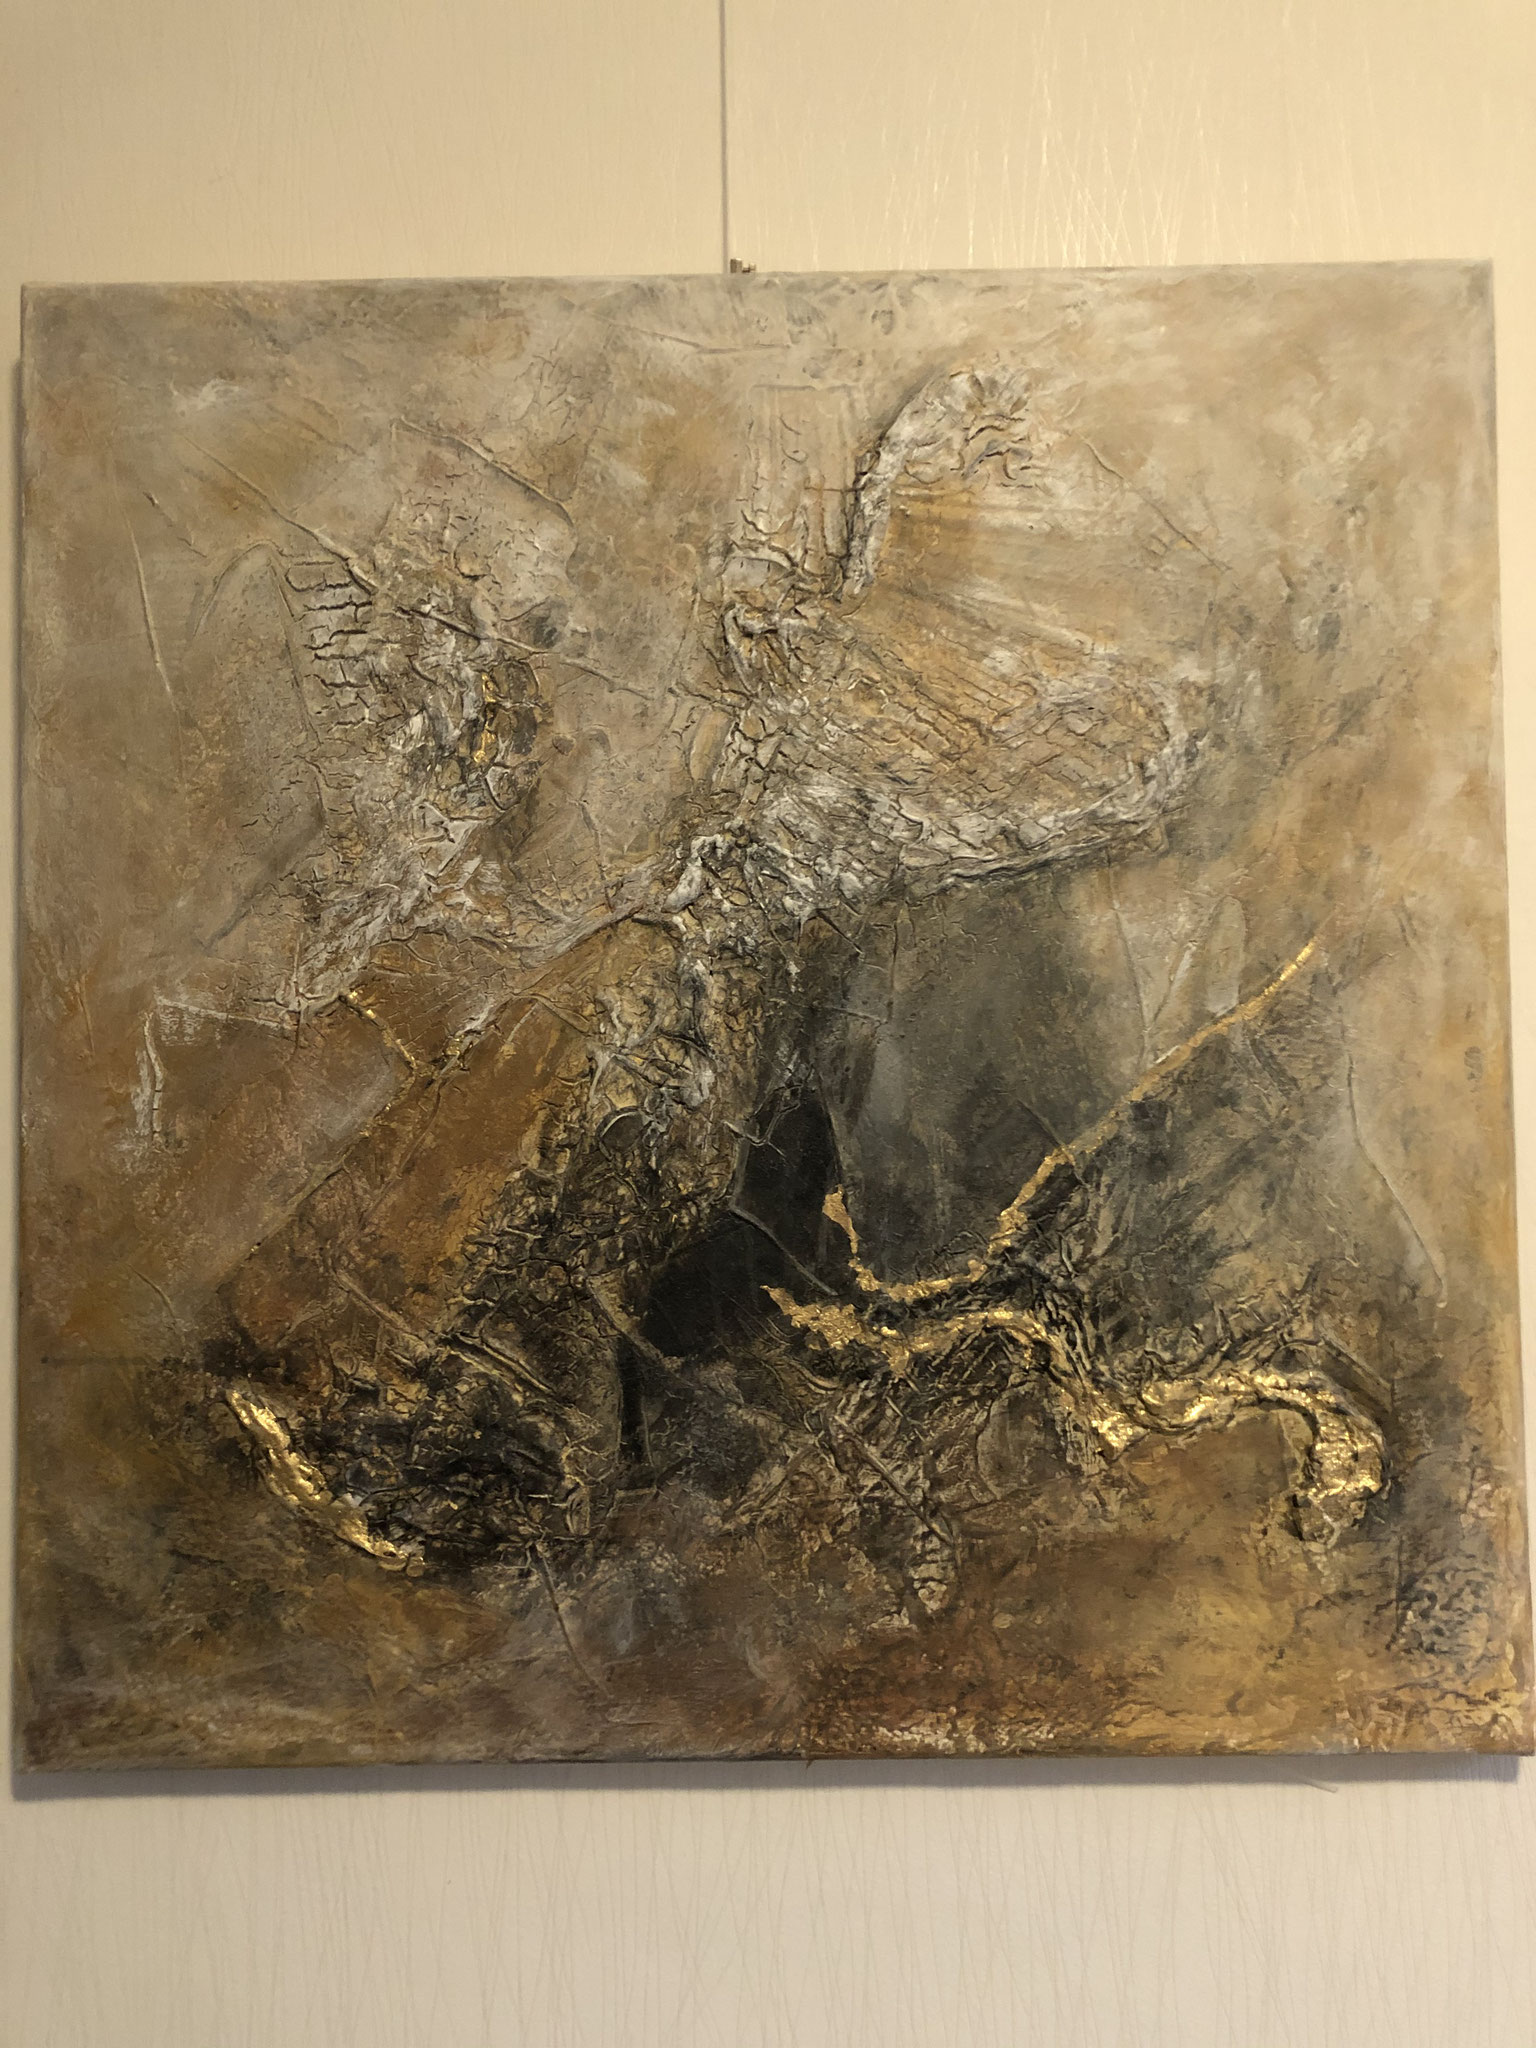 Abstrakt 80x 80 cm mit Marmormehl und Goldfolie